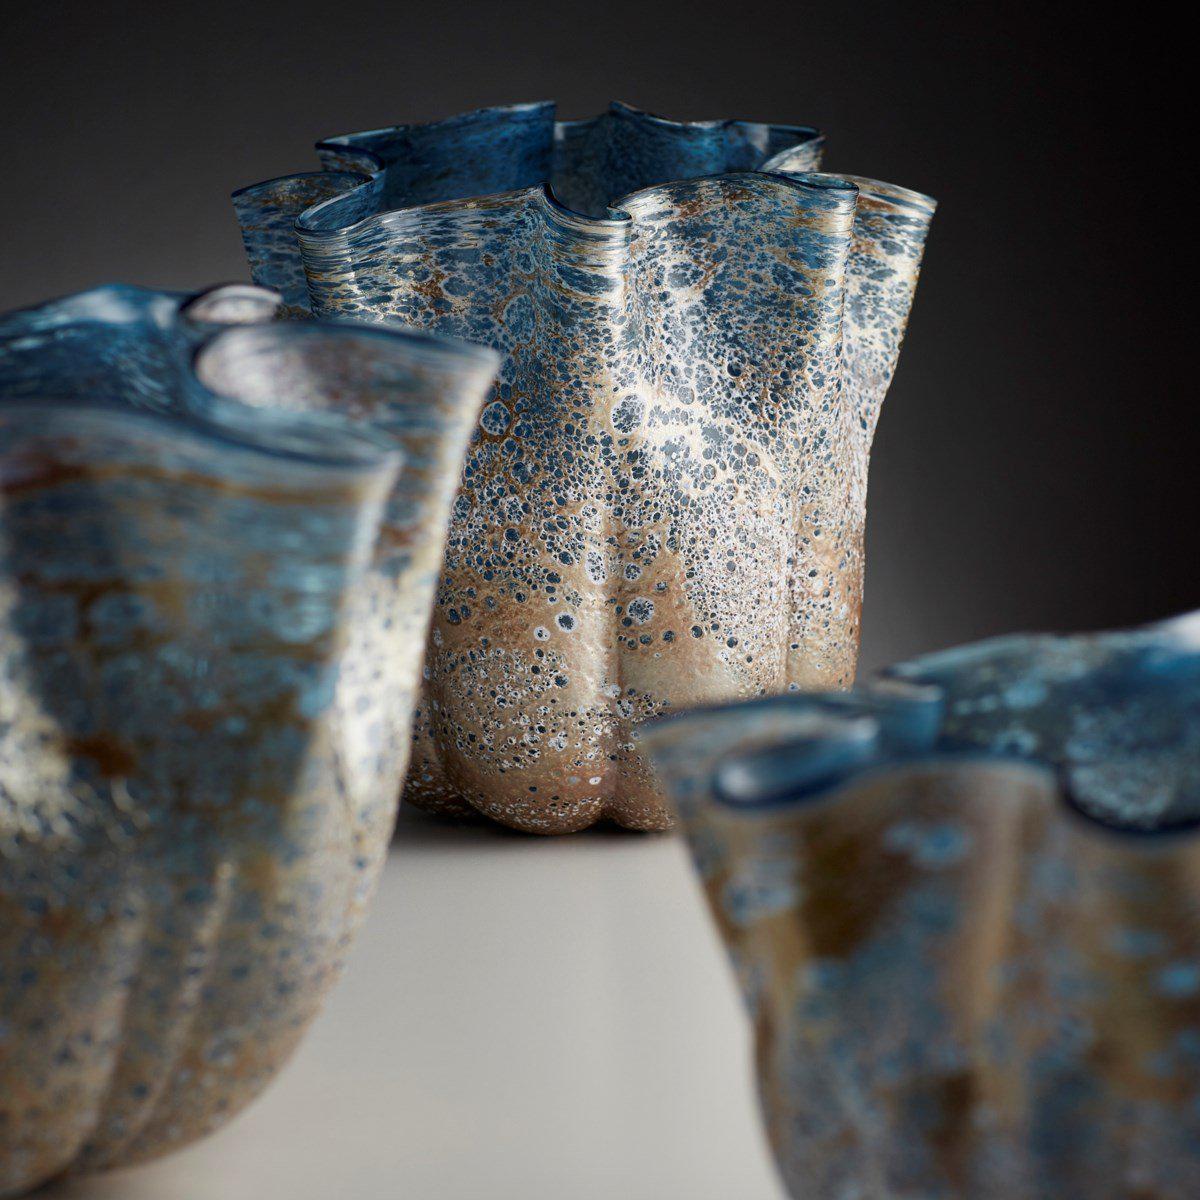 Meduse Vase-Cyan-Vases-Artistic Elements